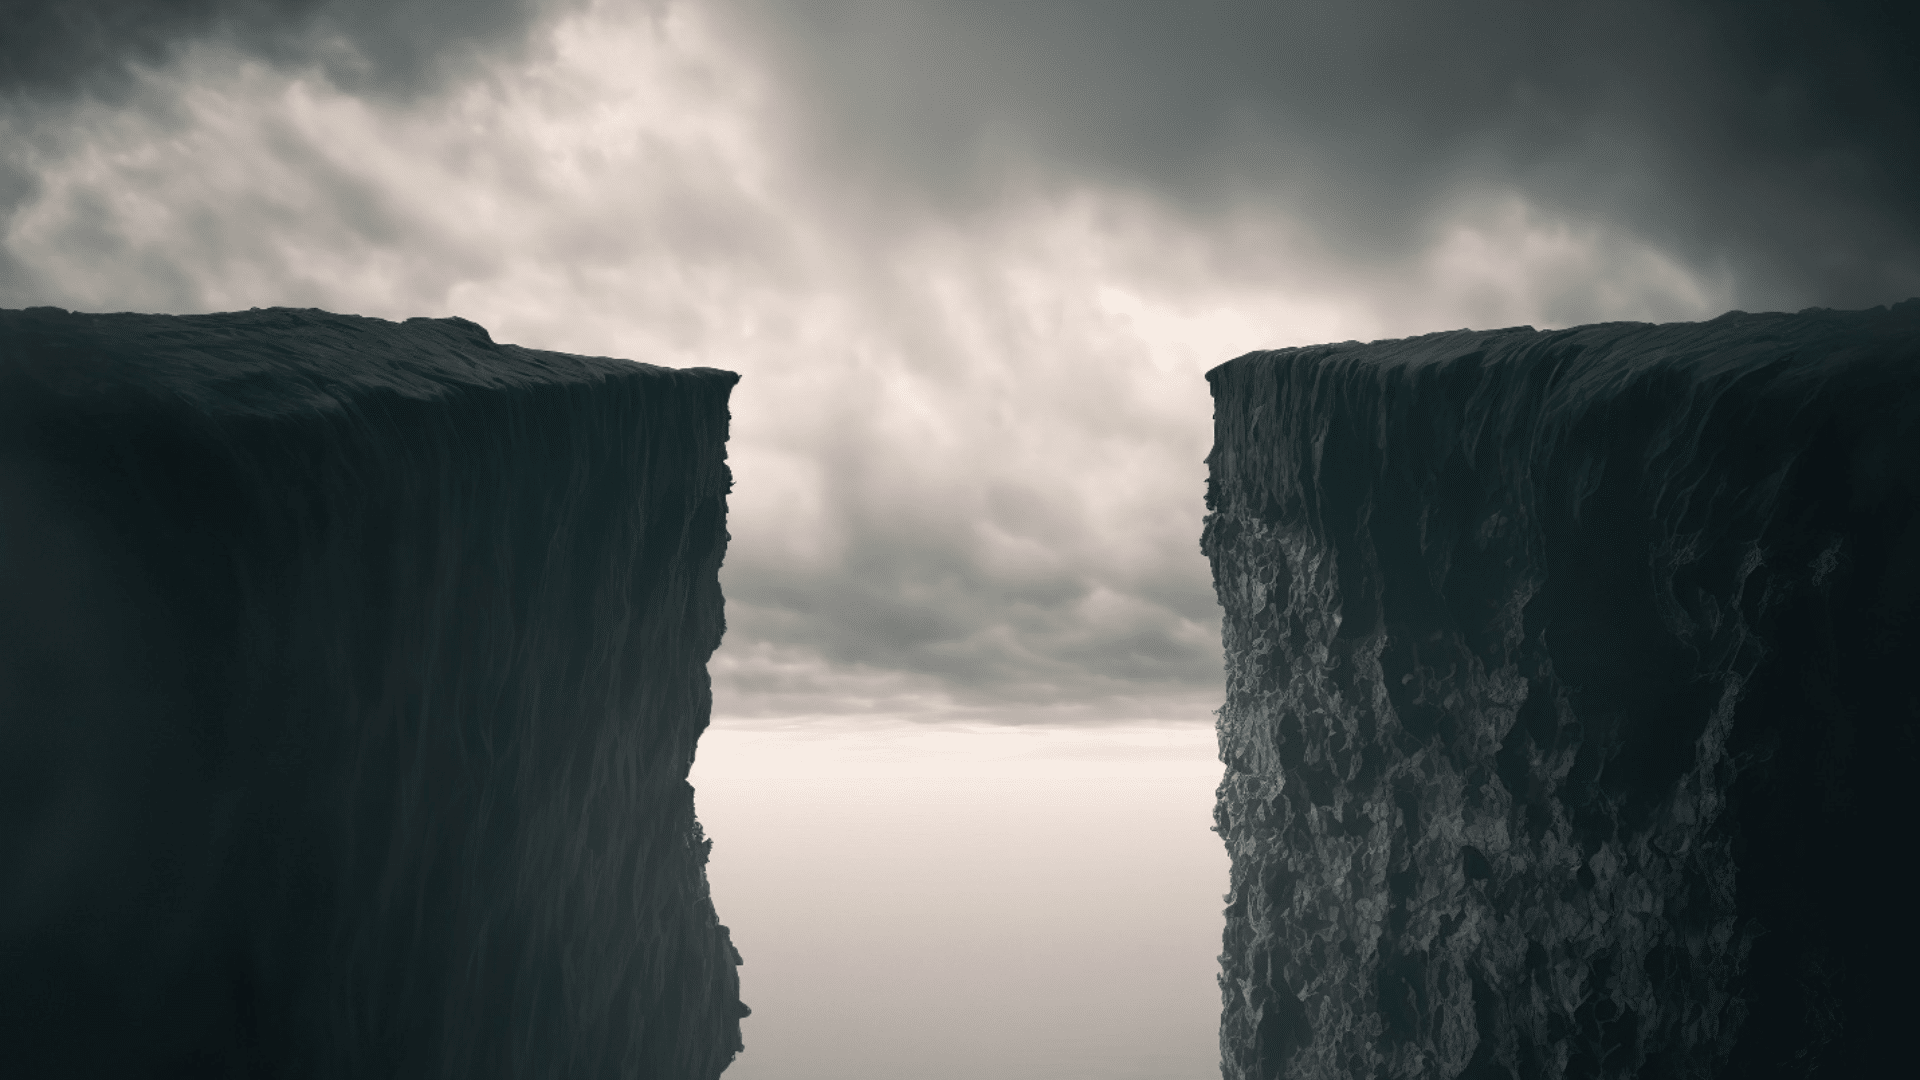 Gap between two cliffs